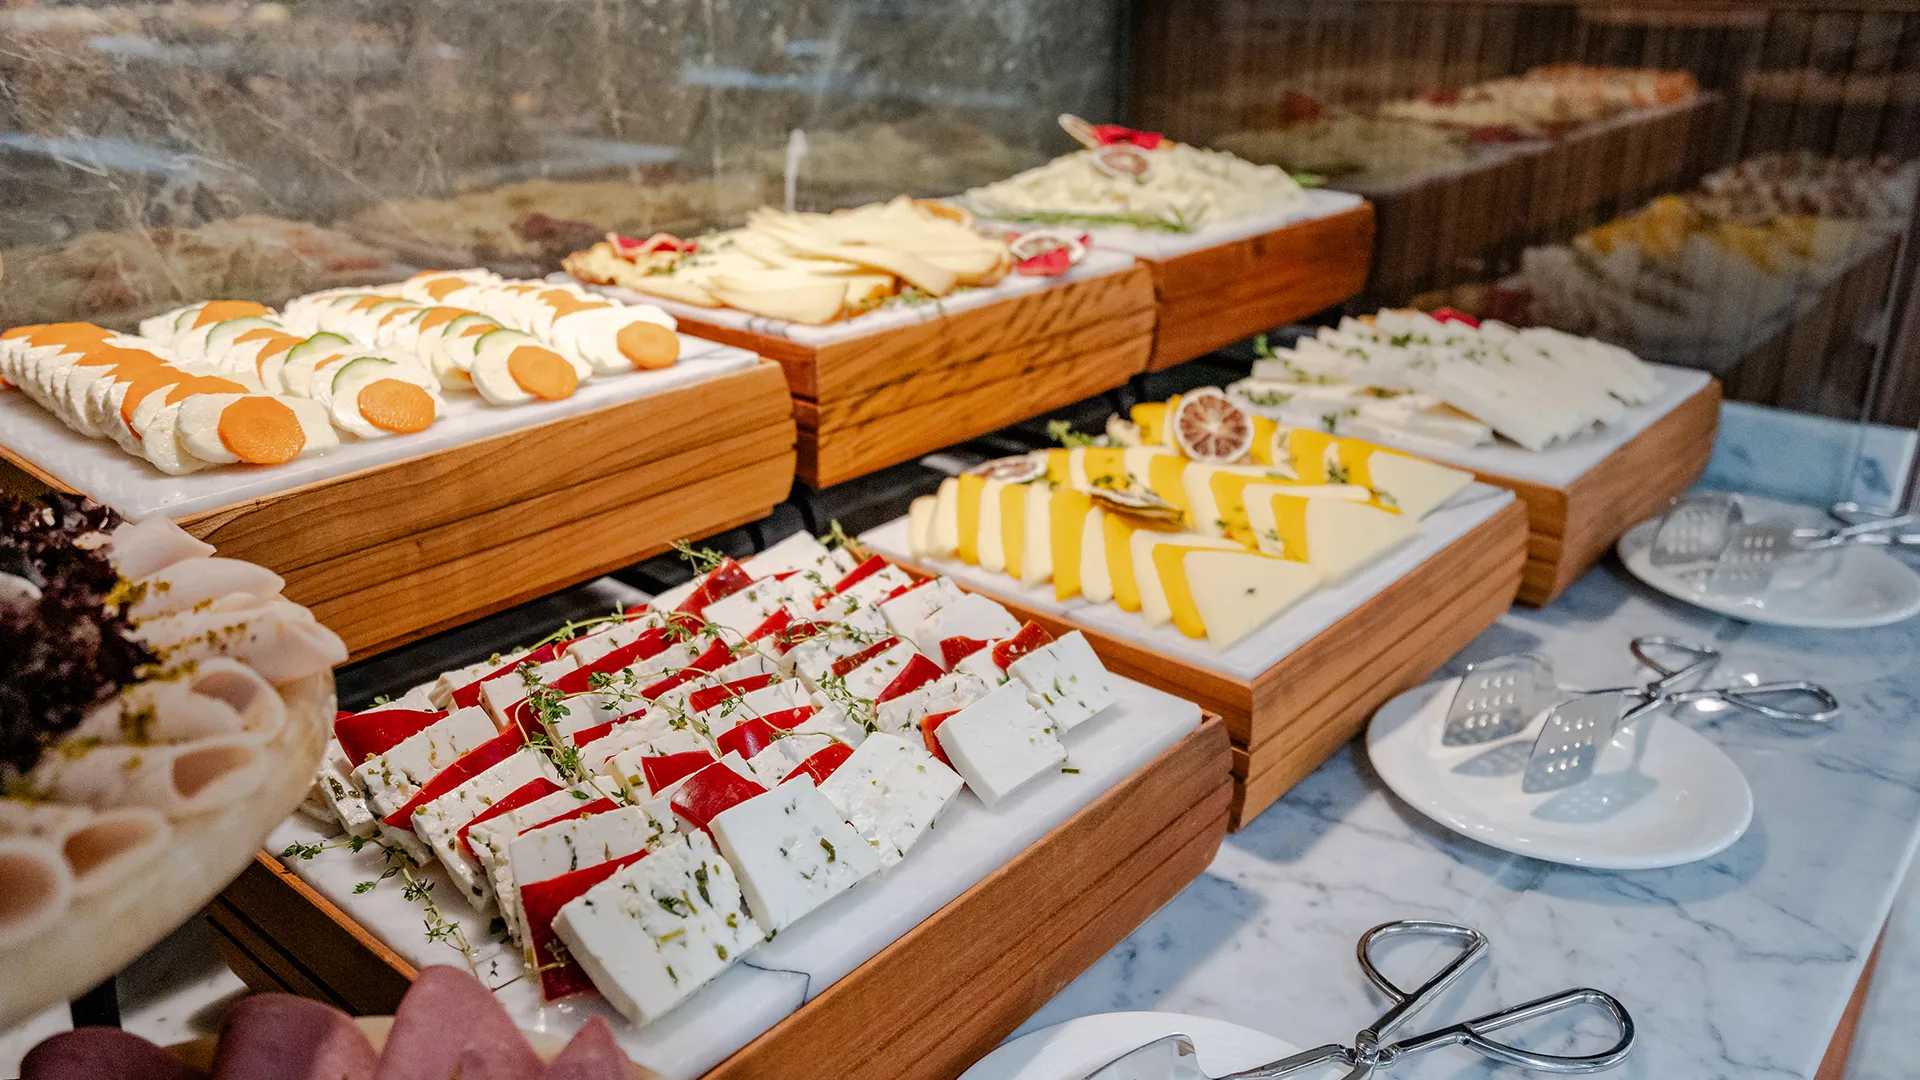 بوفيه الجبن مع مجموعة متنوعة من أنواع الطعام المختلفة.